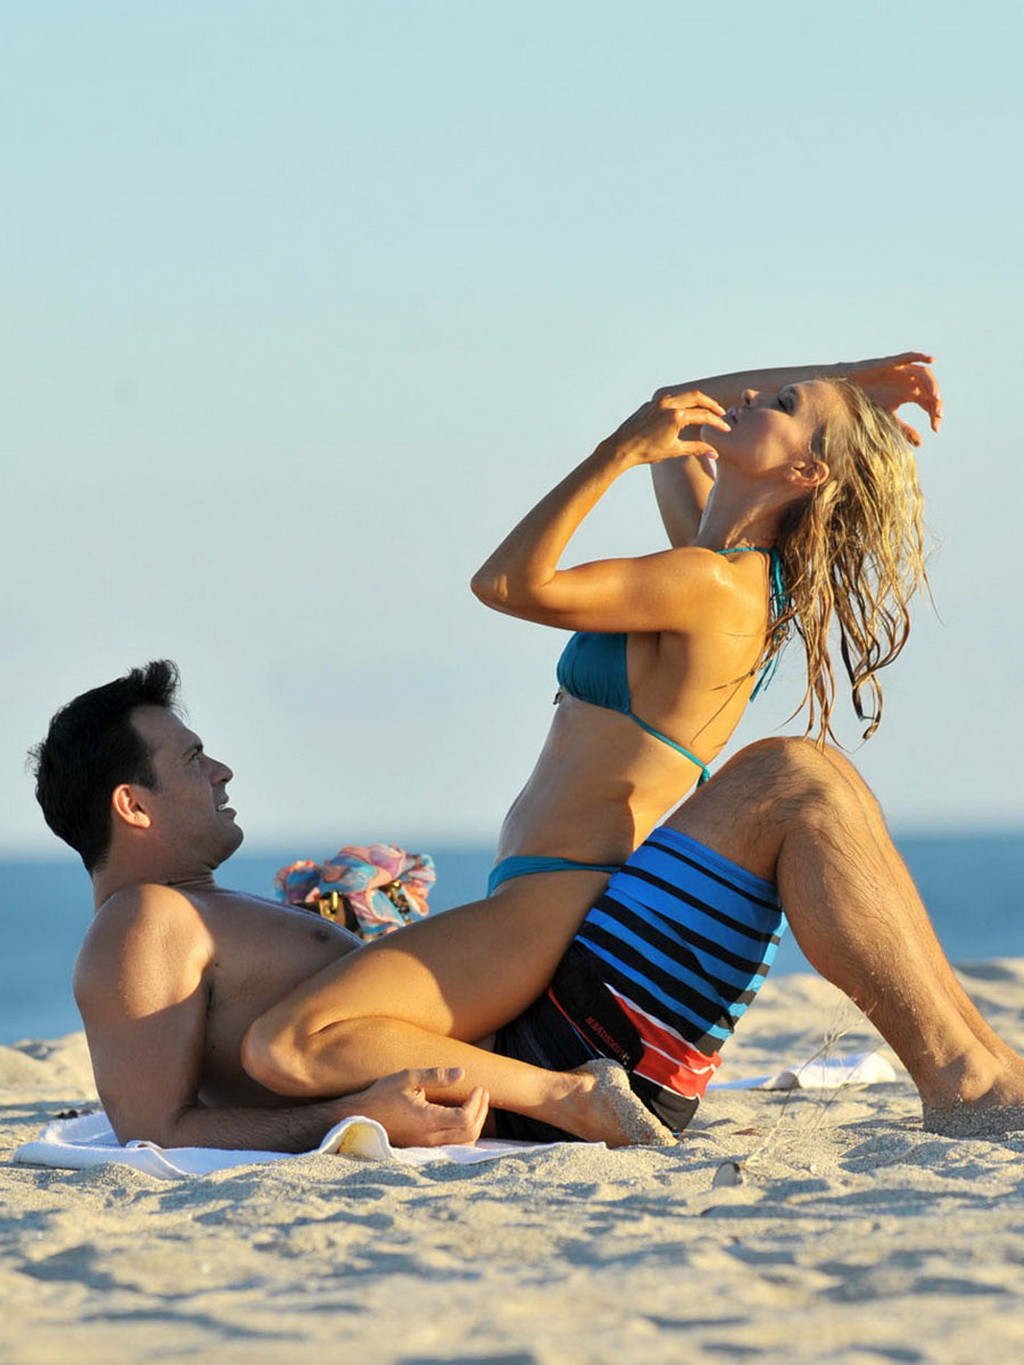 Joanna krupa en bikini mostrando el culo de pokies mientras jode a su novio en una playa #75249152